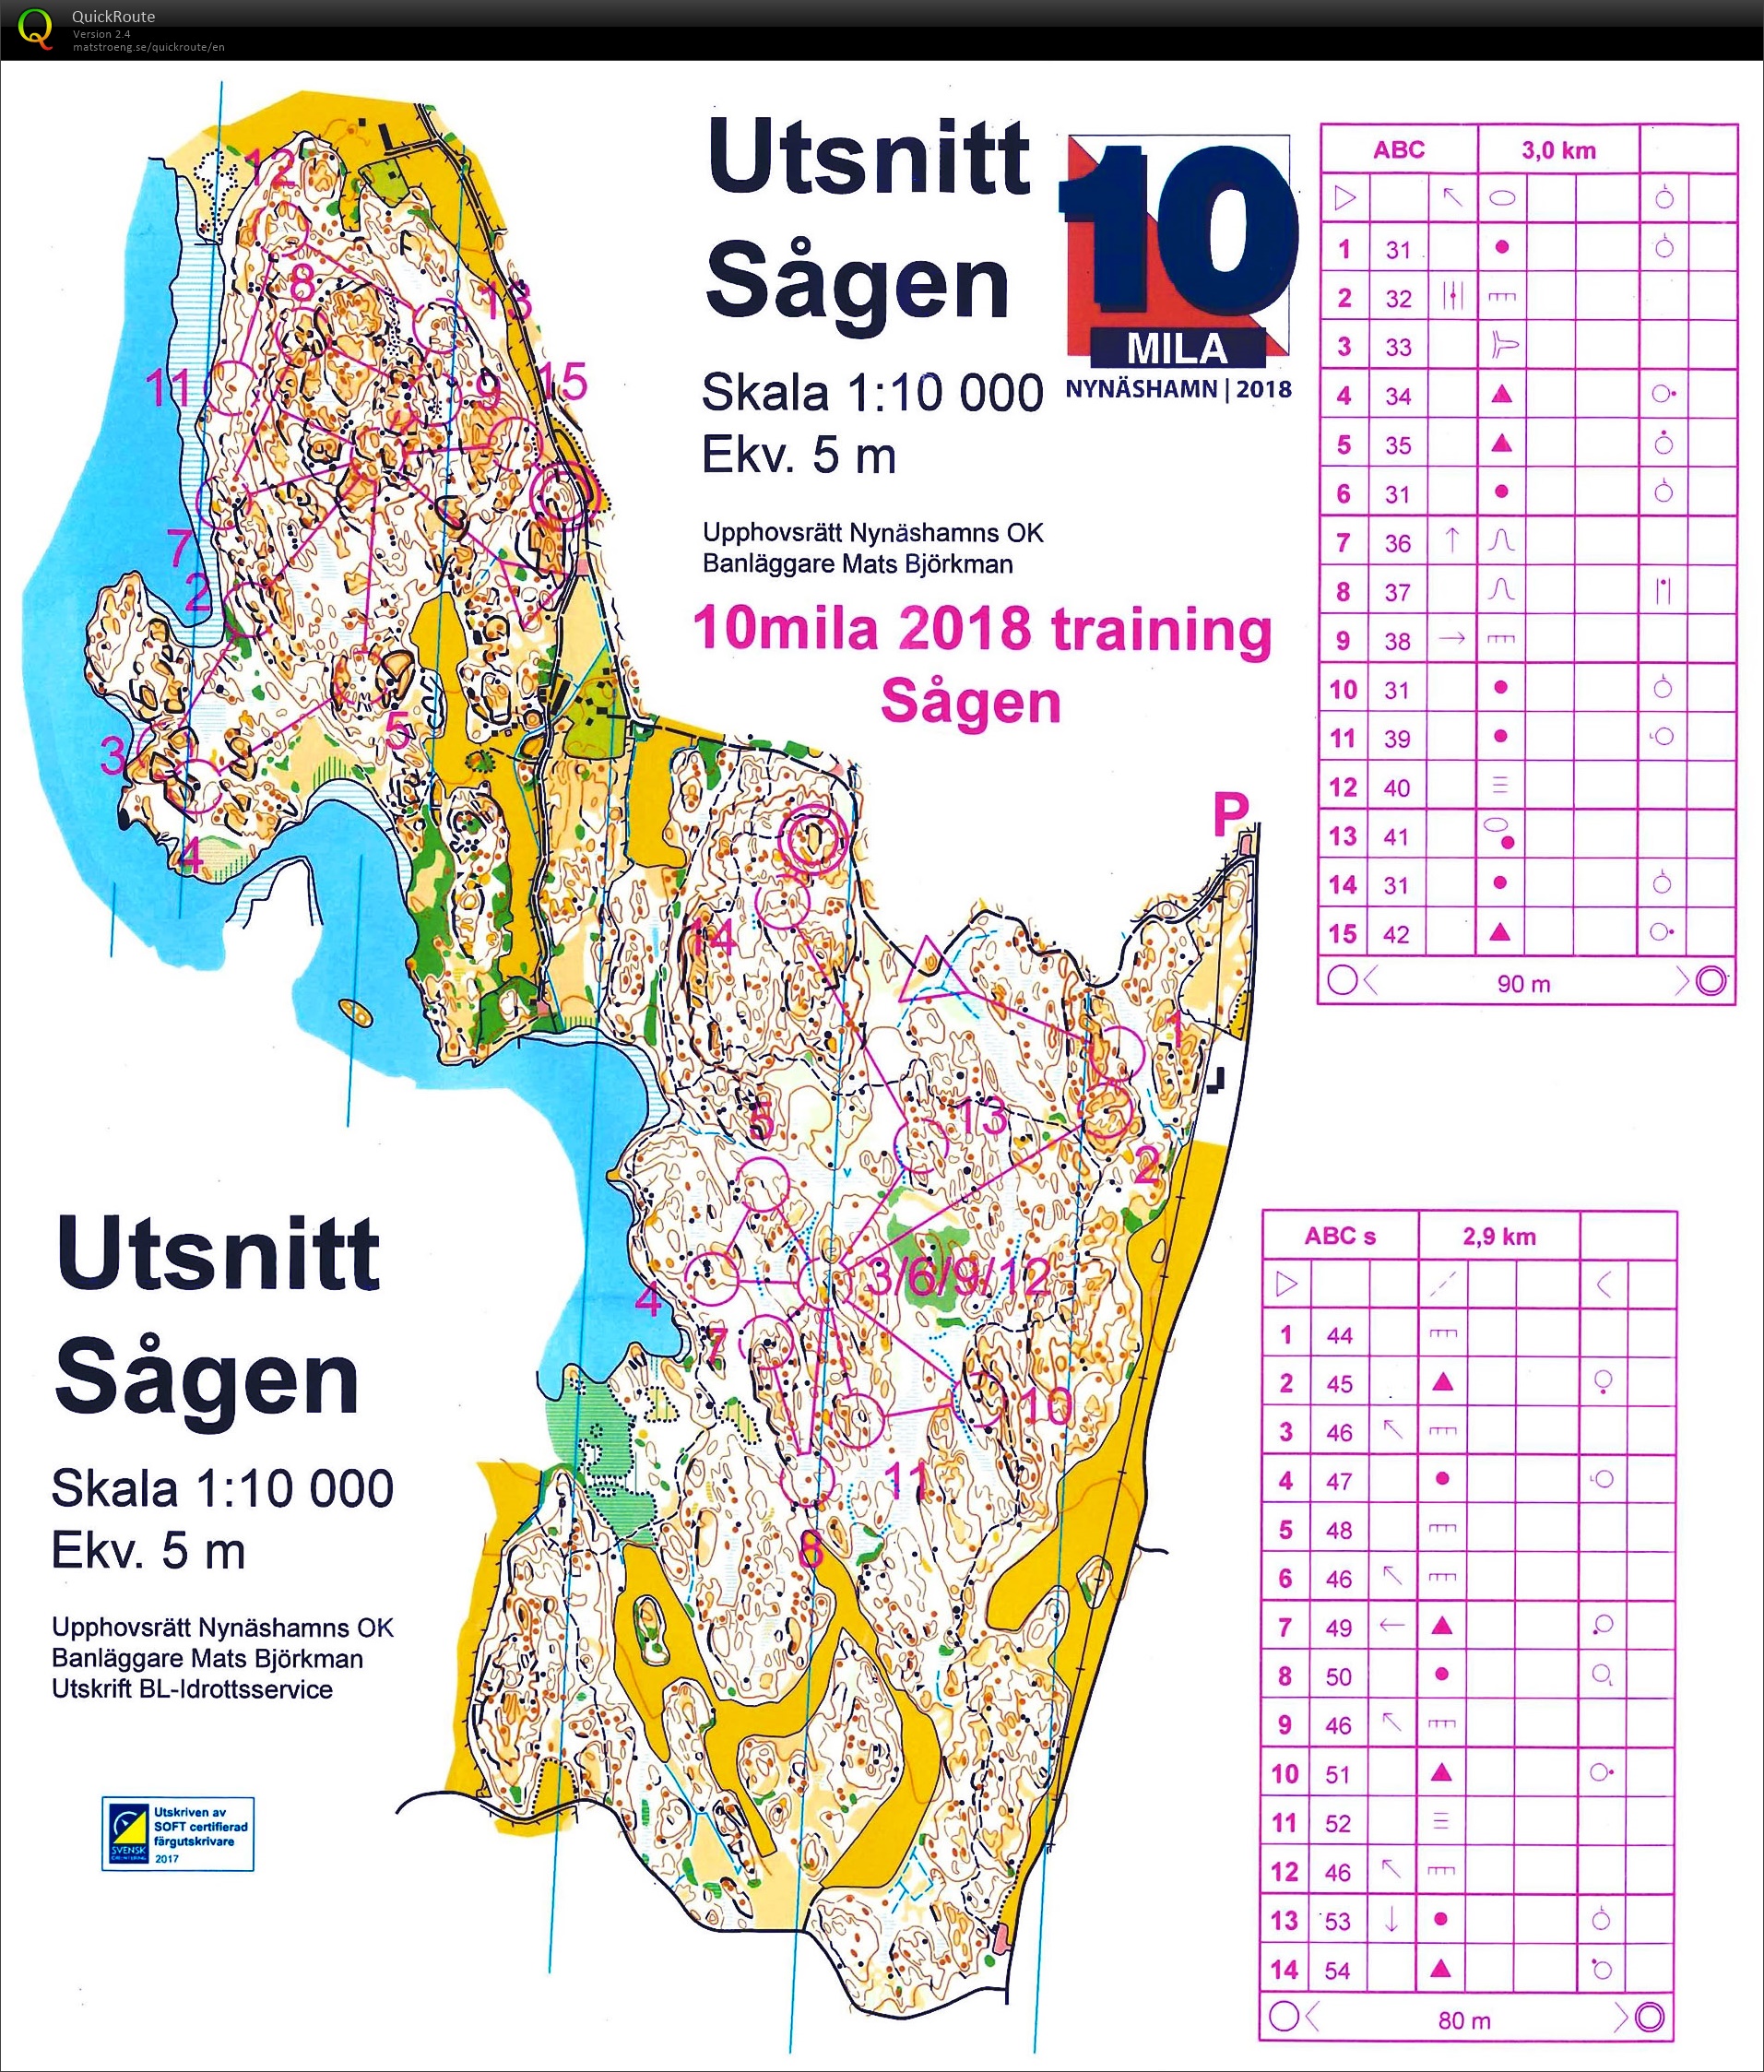 10mila training2 : Sågen (27-04-2018)